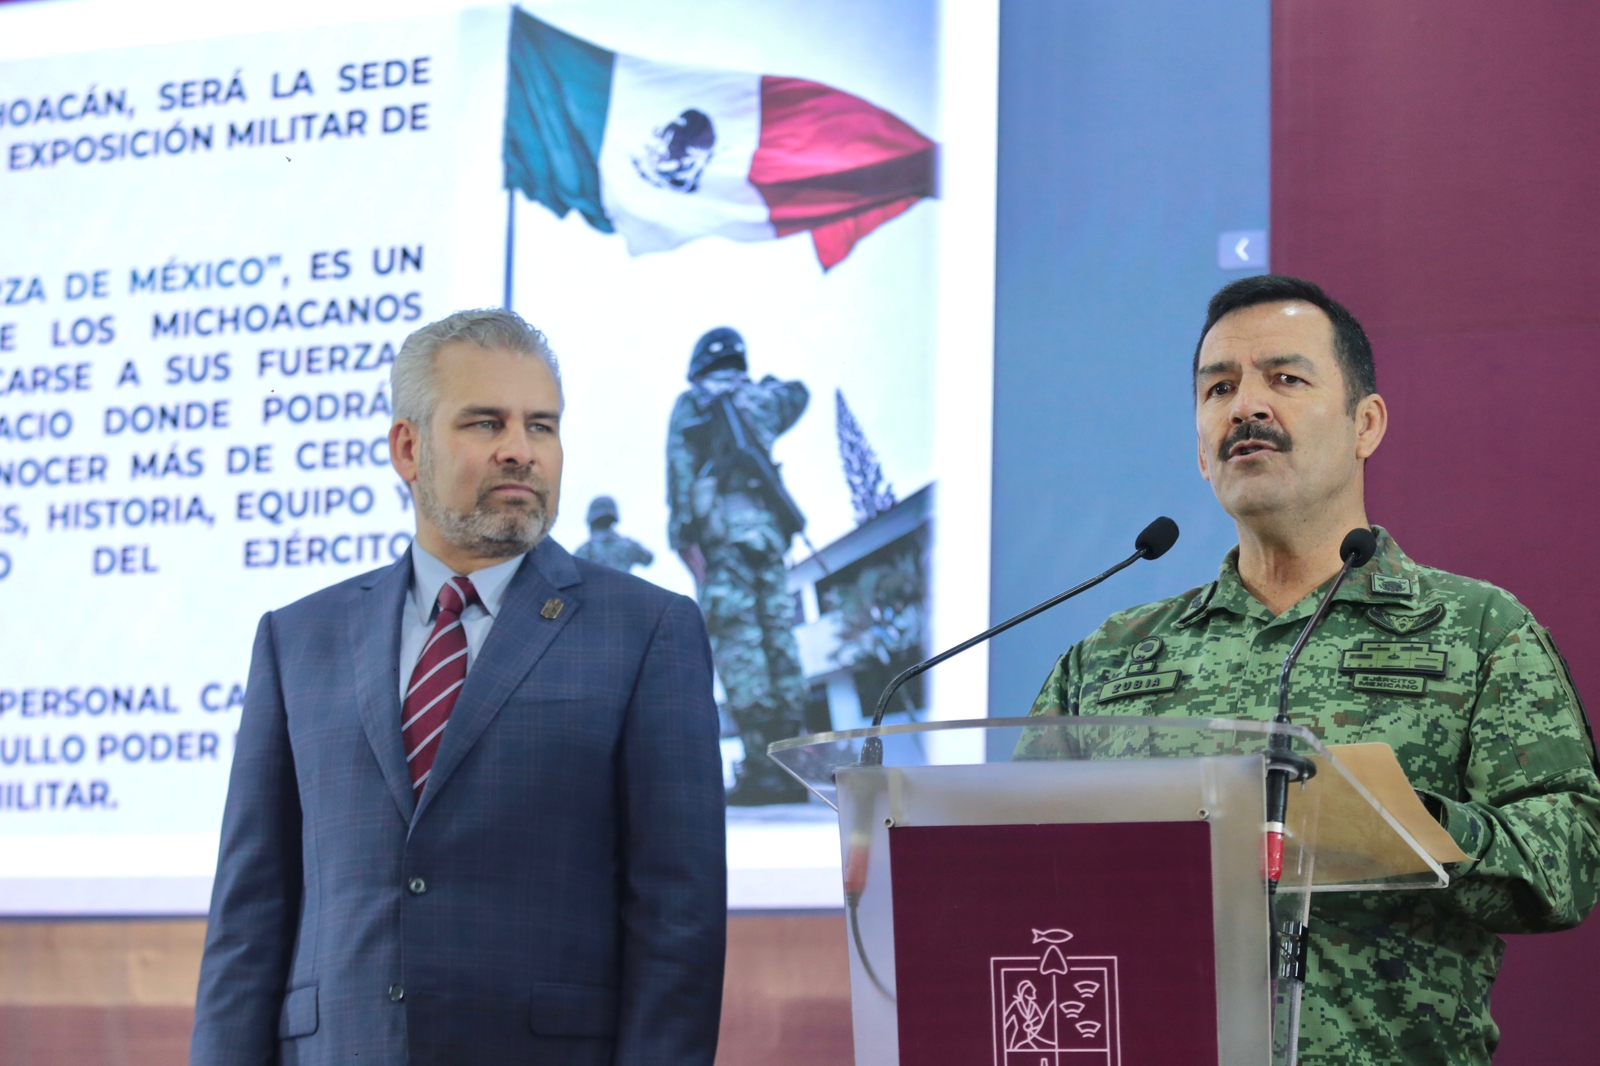 Michoacán recibe la magna exposición militar “La Gran Fuerza de México”